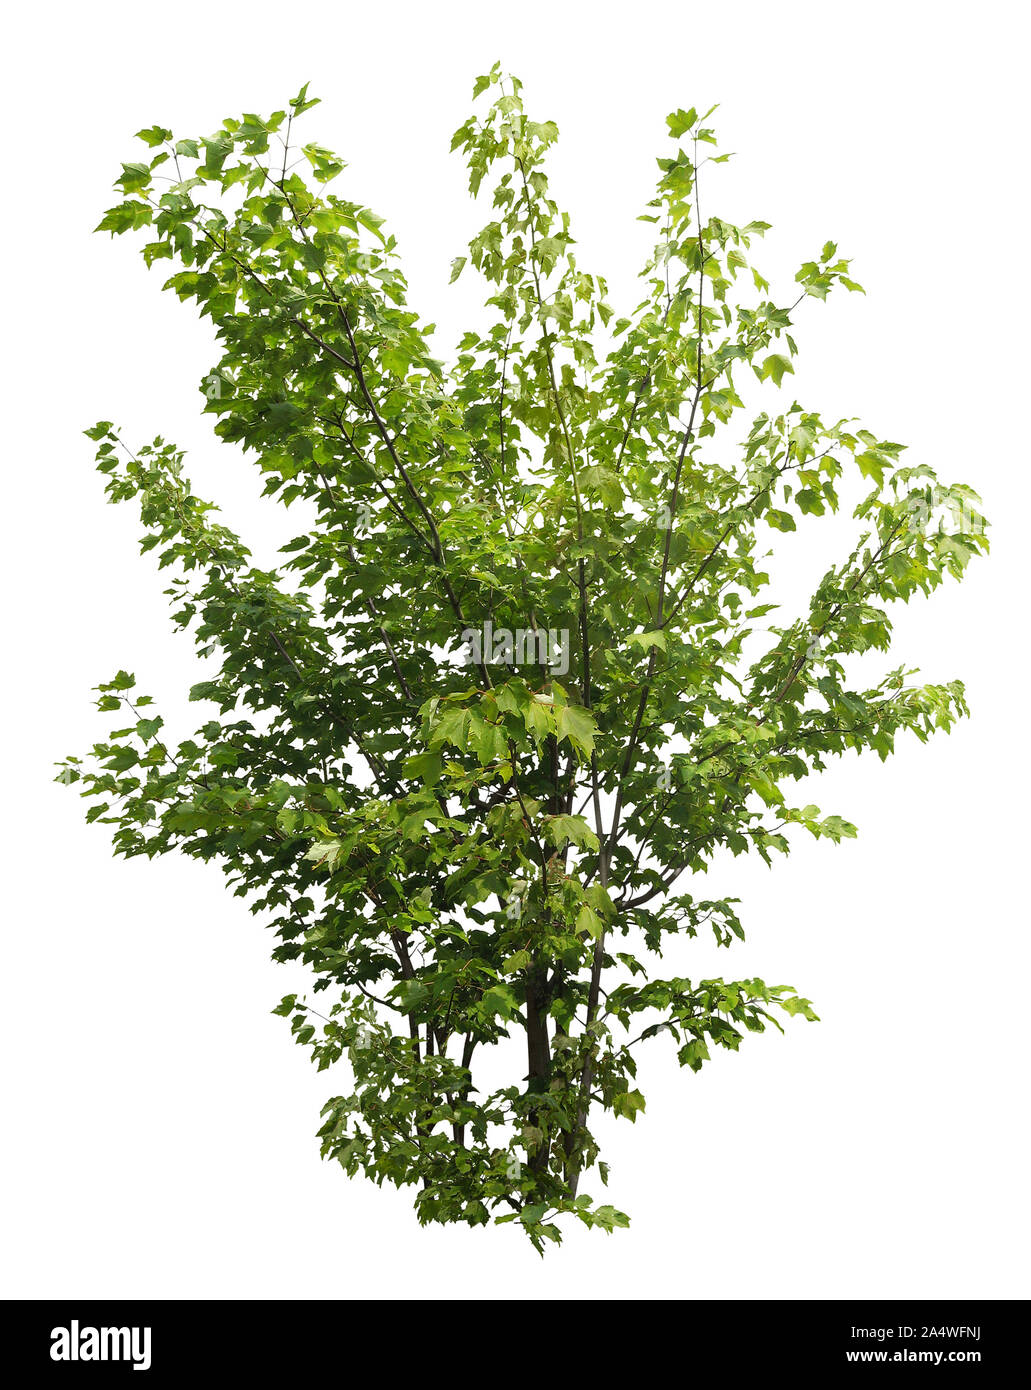 Ausschnitt wilde Pflanze. Bush der belaubten Zweigen. Laub von Ahorn Strauch auf weißem Hintergrund. Grüne Pflanze. Hochwertige Freistellungsmaske Stockfoto